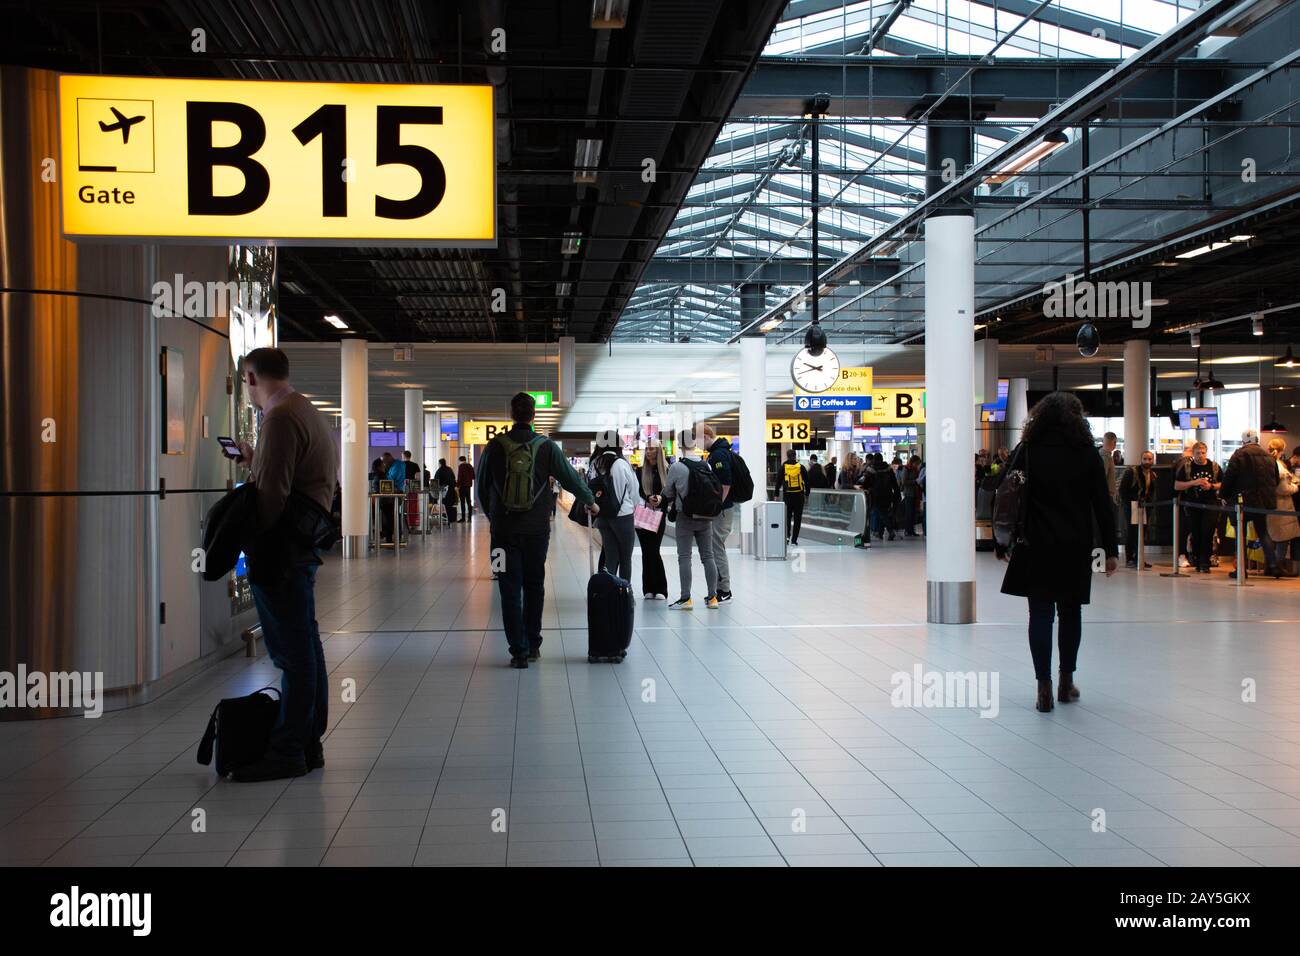 Flughafen-Terminal-Gate mit Tornummer für Abflug, Passagiere mit Gepäck und Koffer Stockfoto